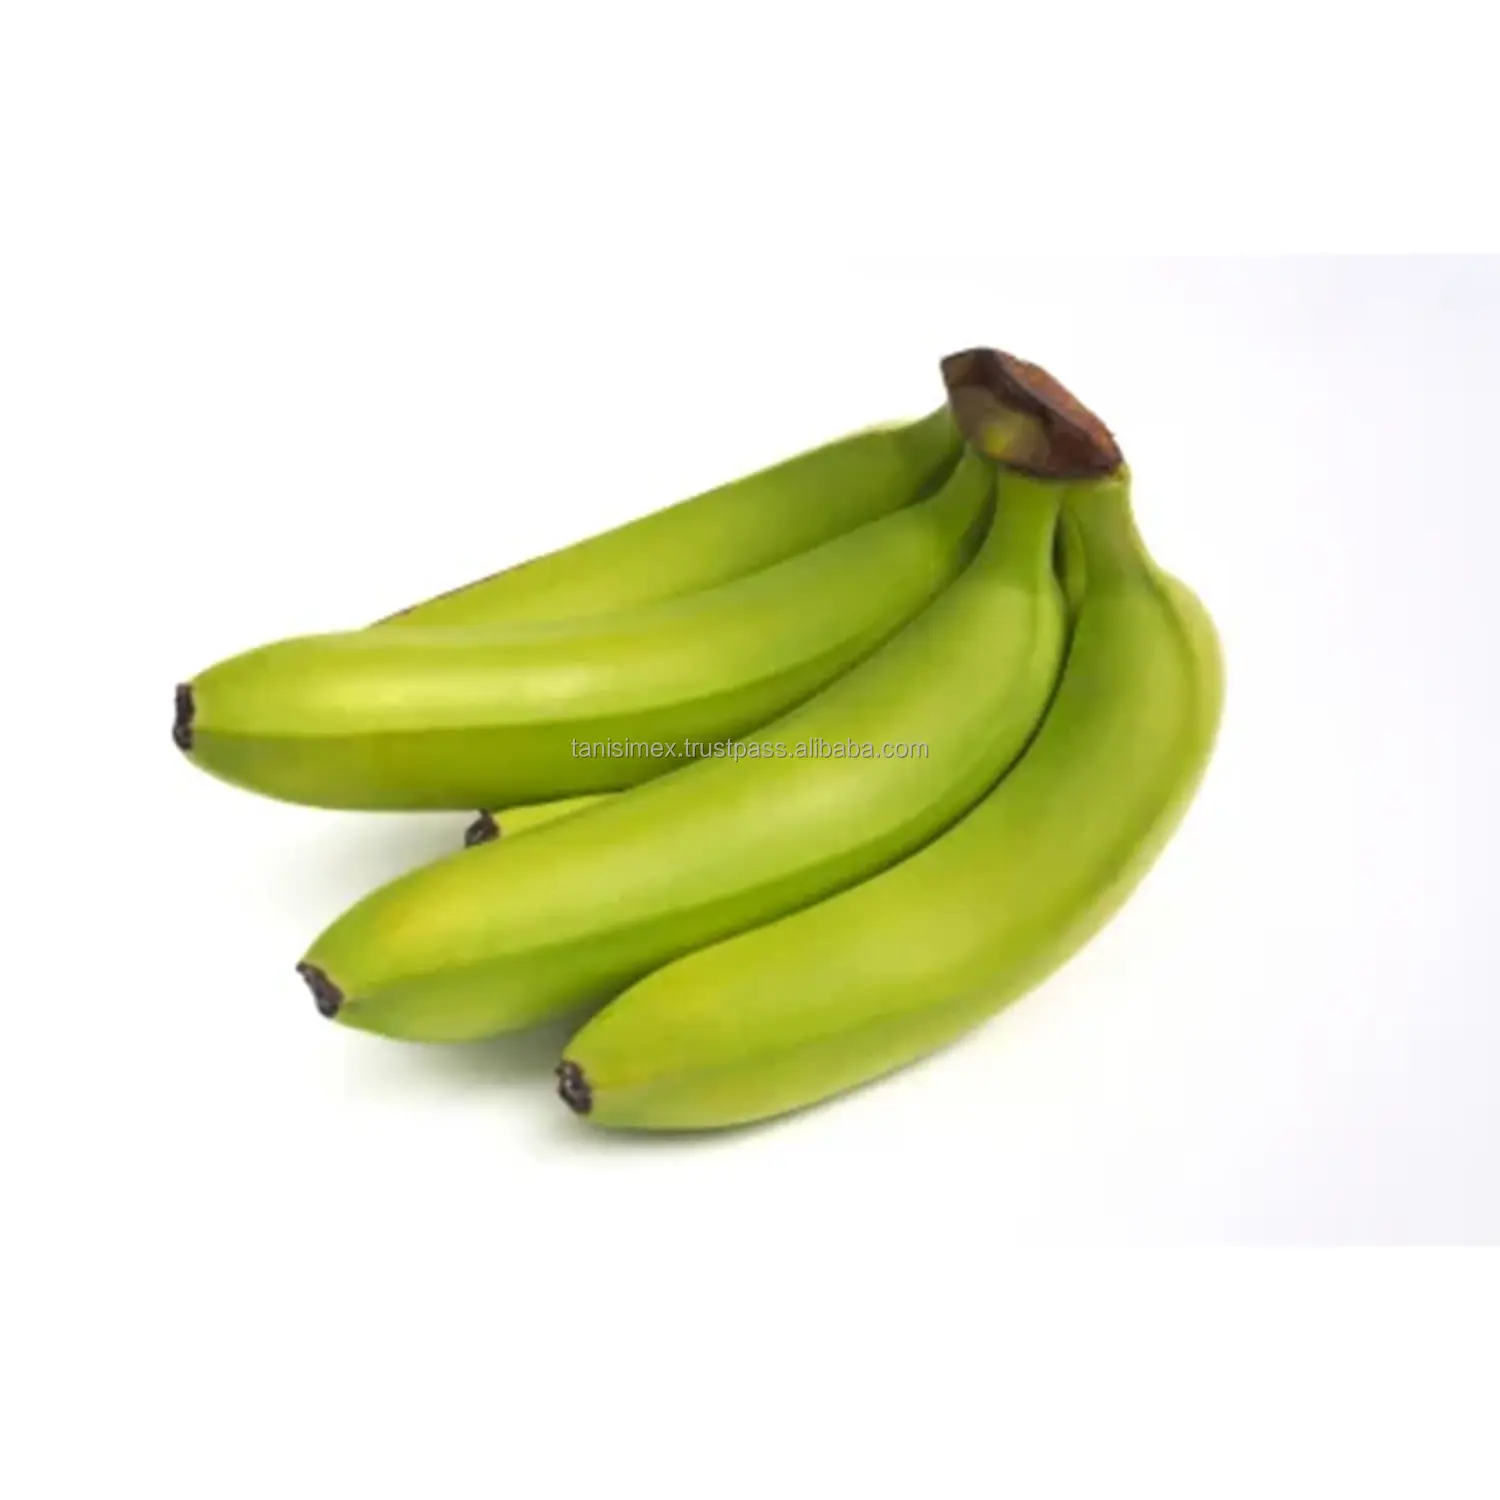 Вьетнамское банановое Королевство: свежие Кавендиш-Оптовые поставки для международных рынков